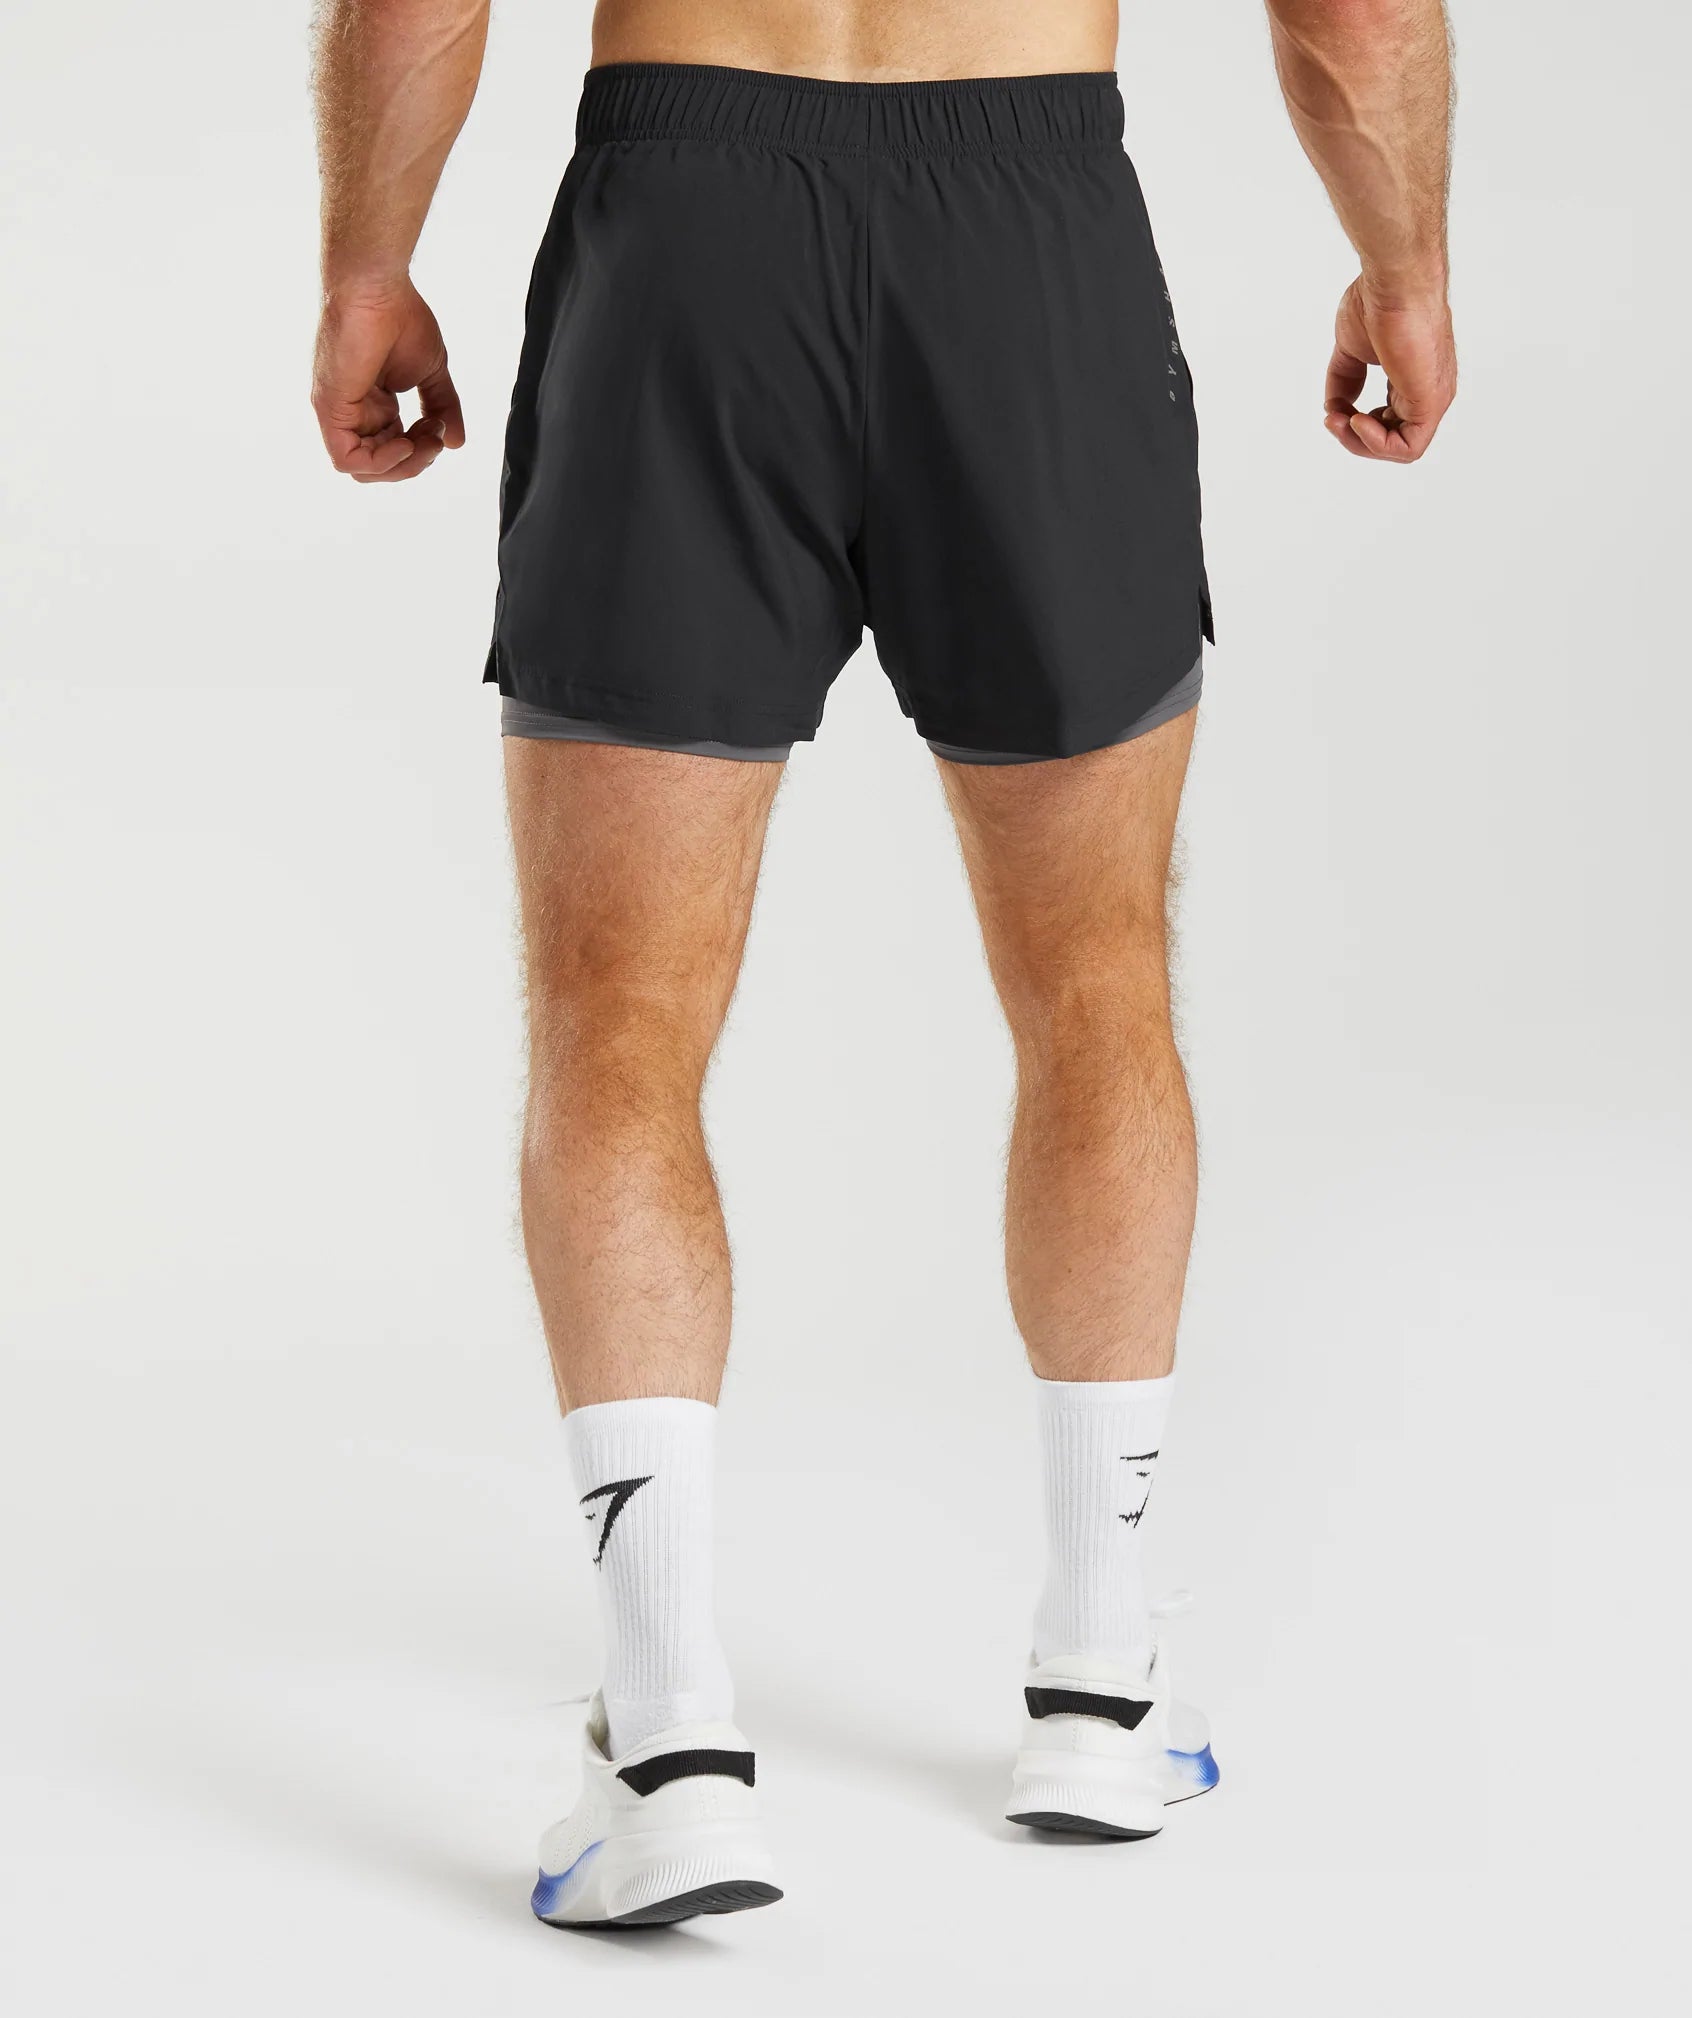 AE, Statement Ribbed Flex Shorts - Black, Gym Shorts Men